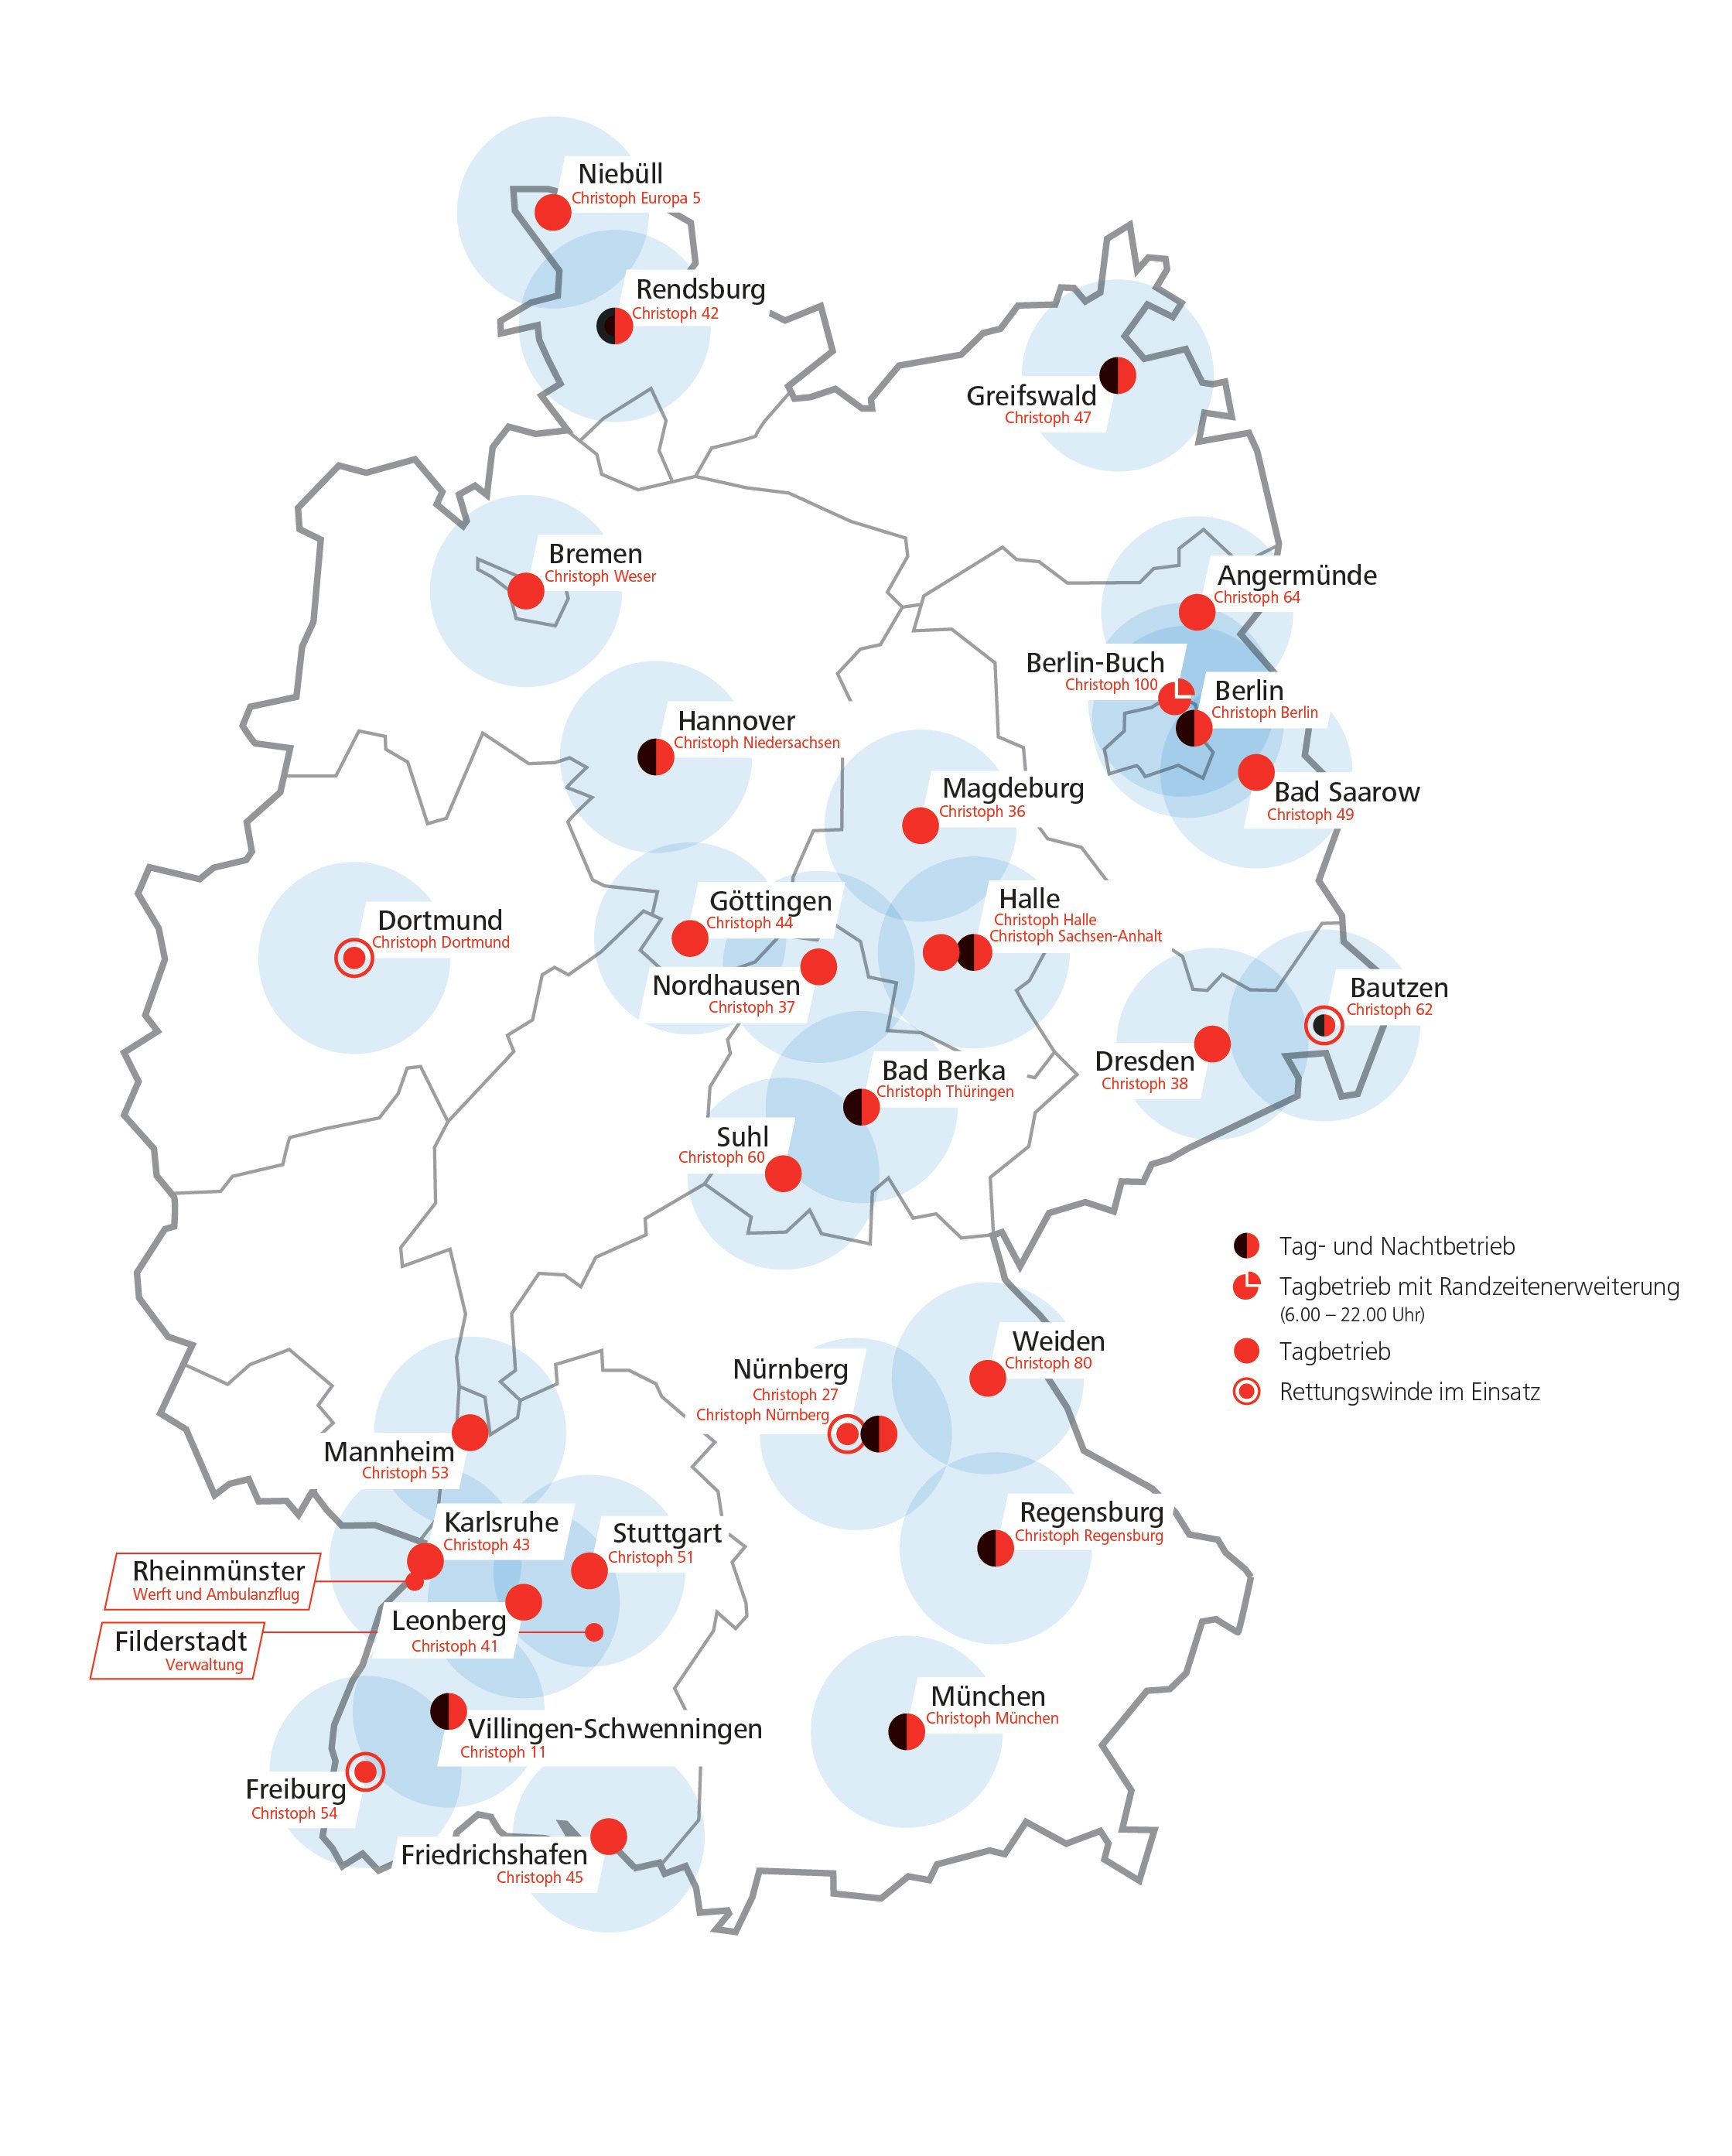 Deutschlandkarte mit allen Stationen der DRF Luftrettung eingezeichnet